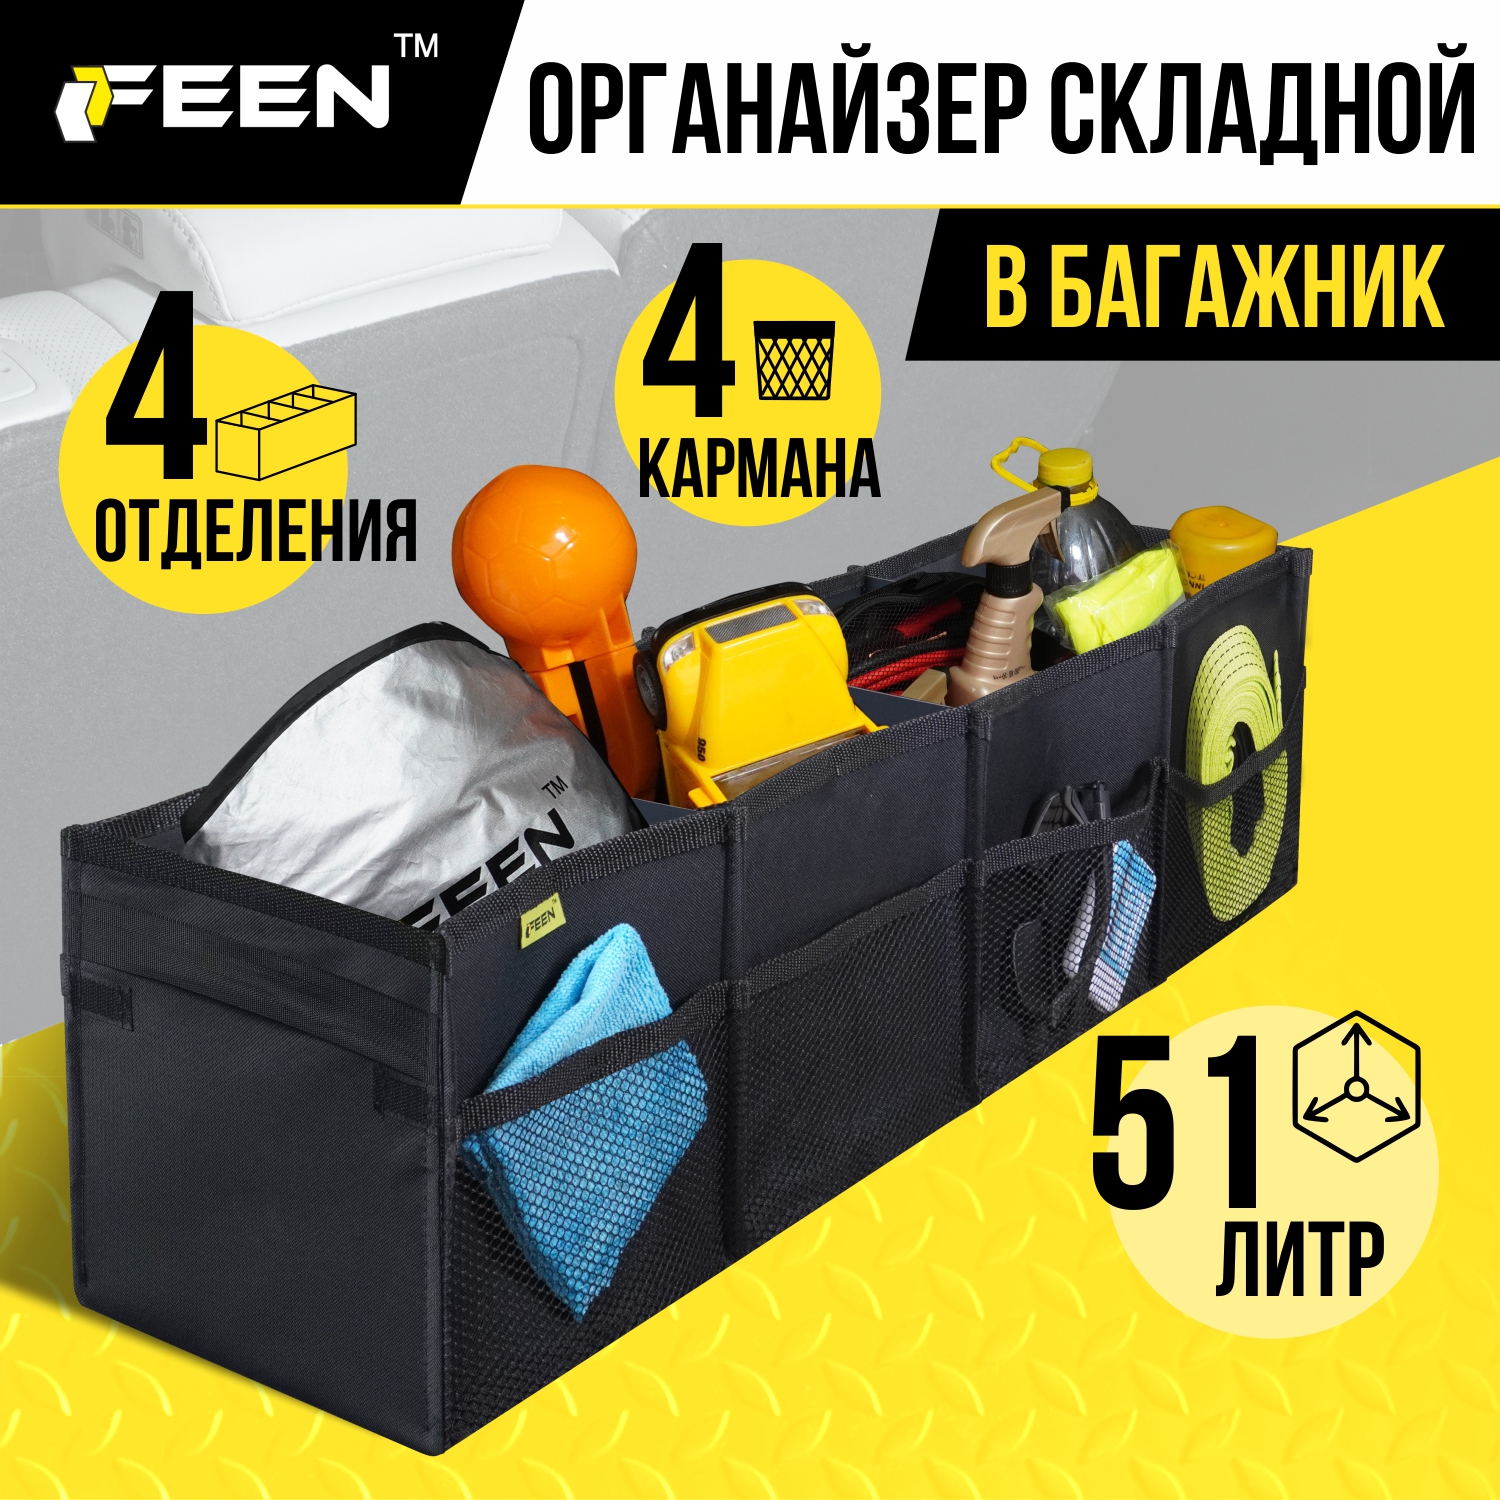 Органайзер в багажник FEEN автомобильный складной, 51 литр, 96 х 23 см